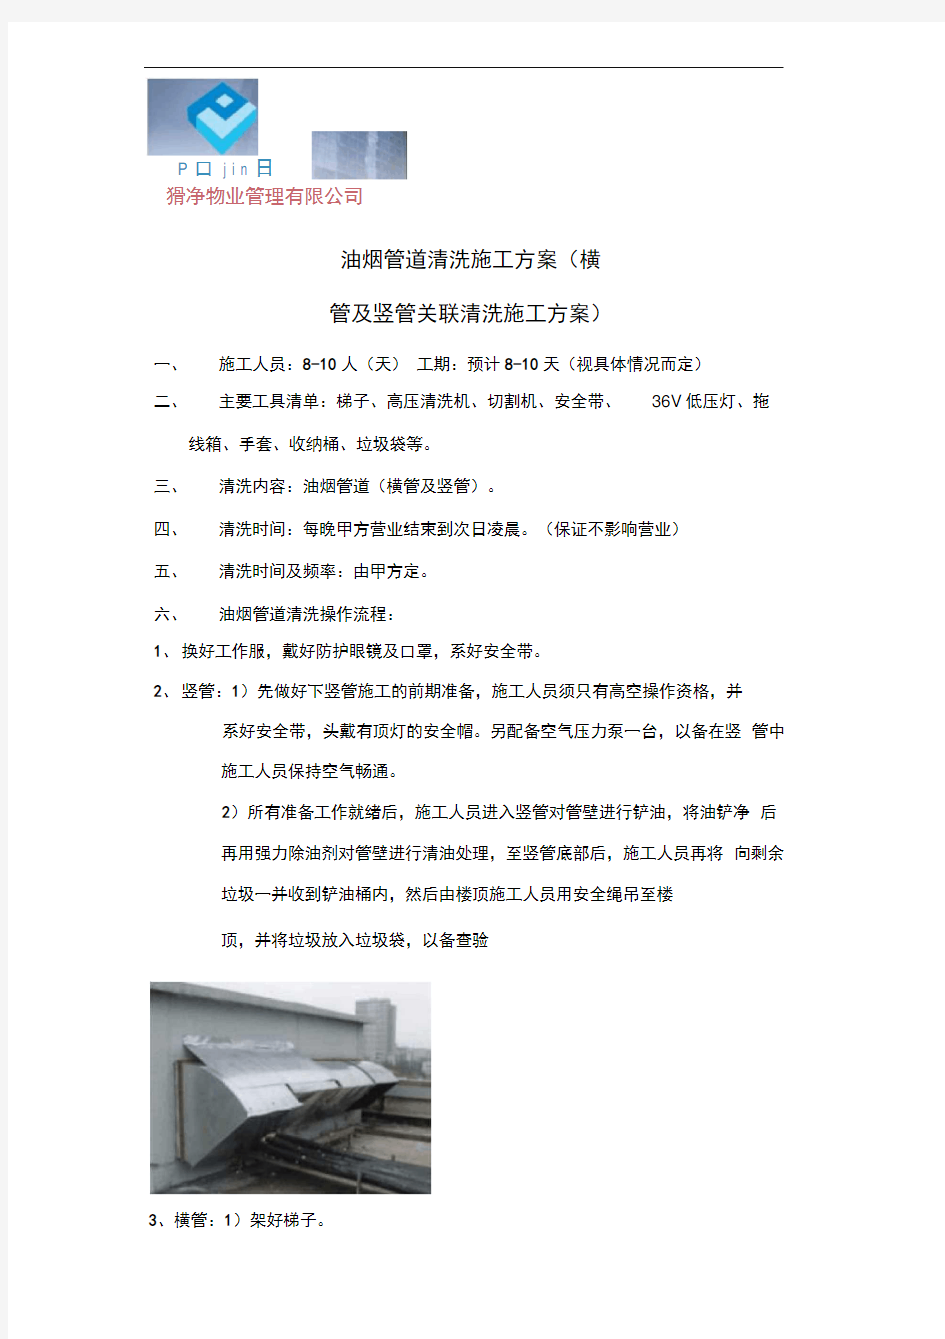 油烟管道清洗施工方案.pdf